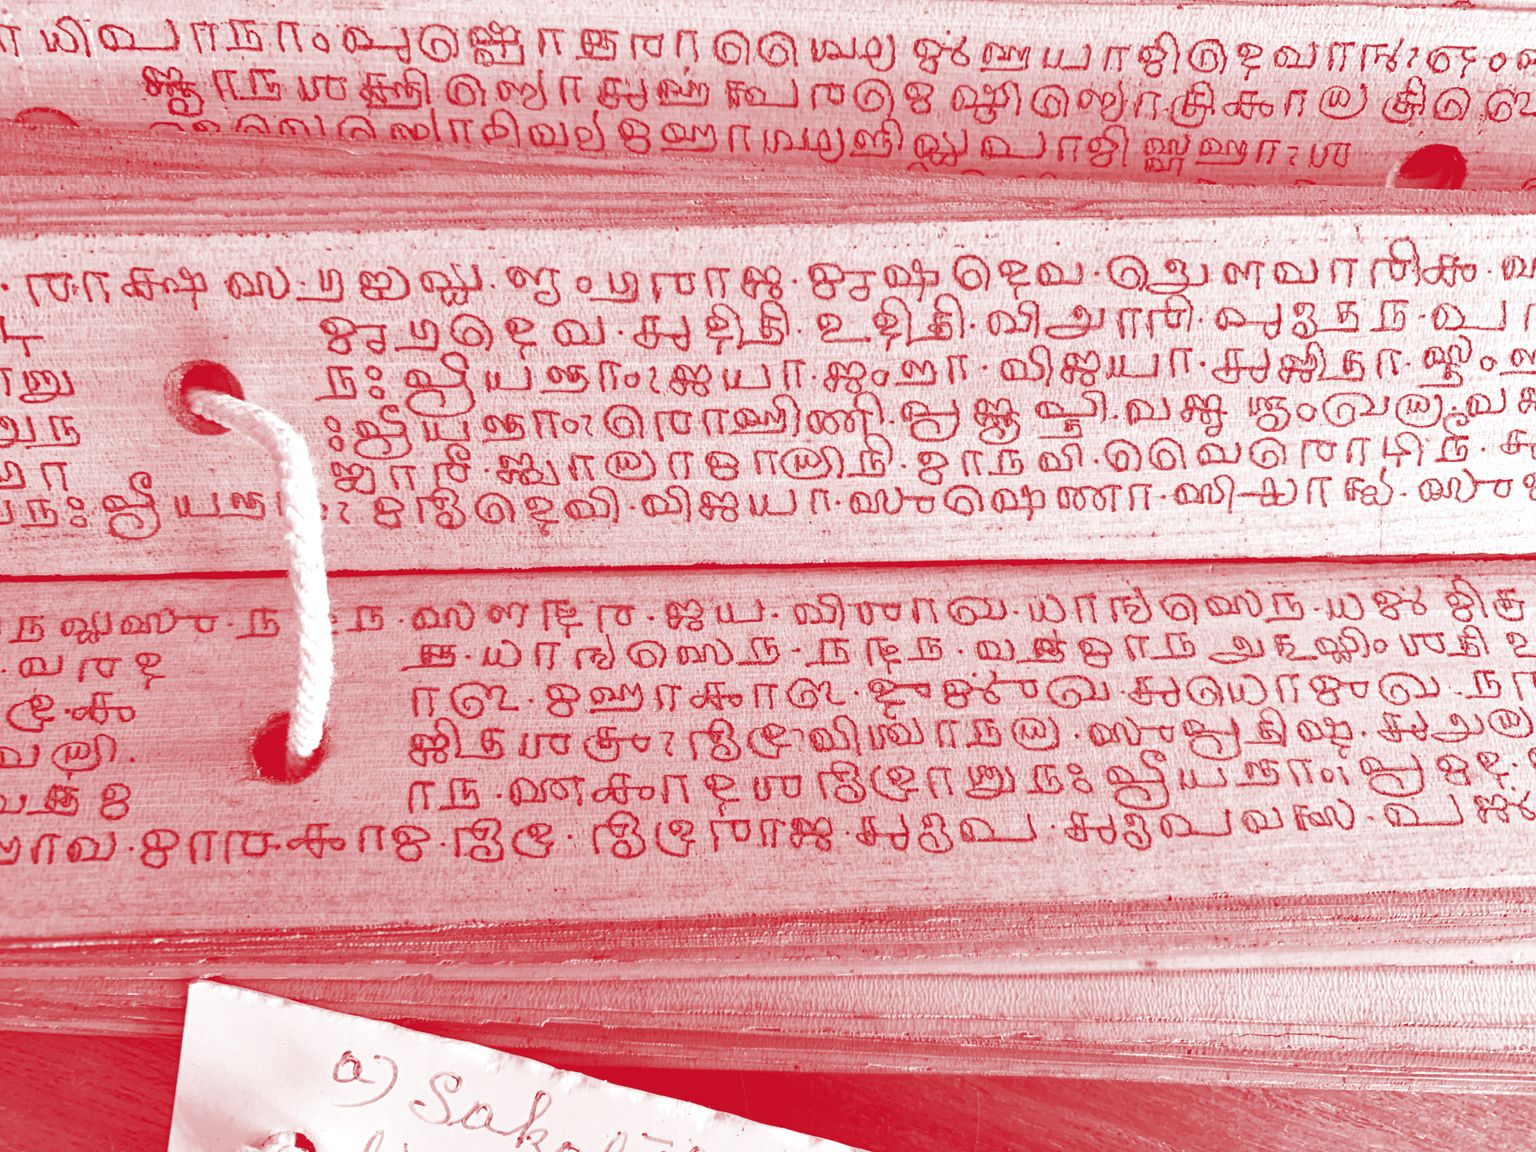 Manuscrit sur ôles, écriture grantha, utilisée au pays tamoul pour écrire le sanskrit.